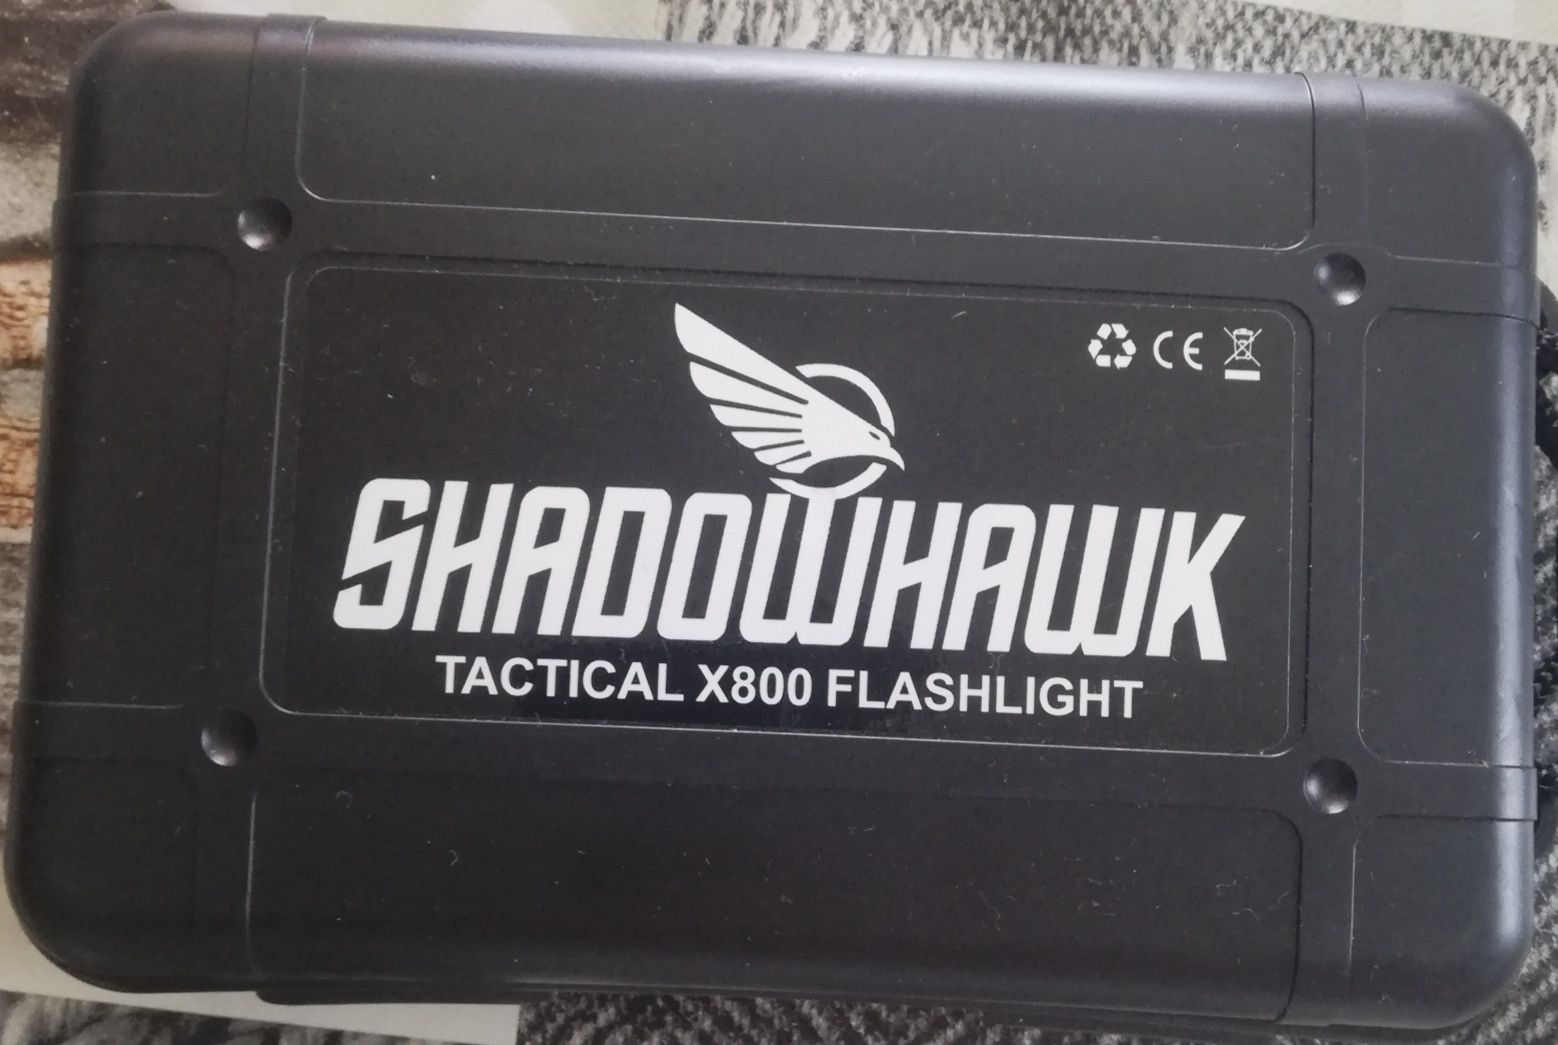 Shadowhawk x800 flashlight